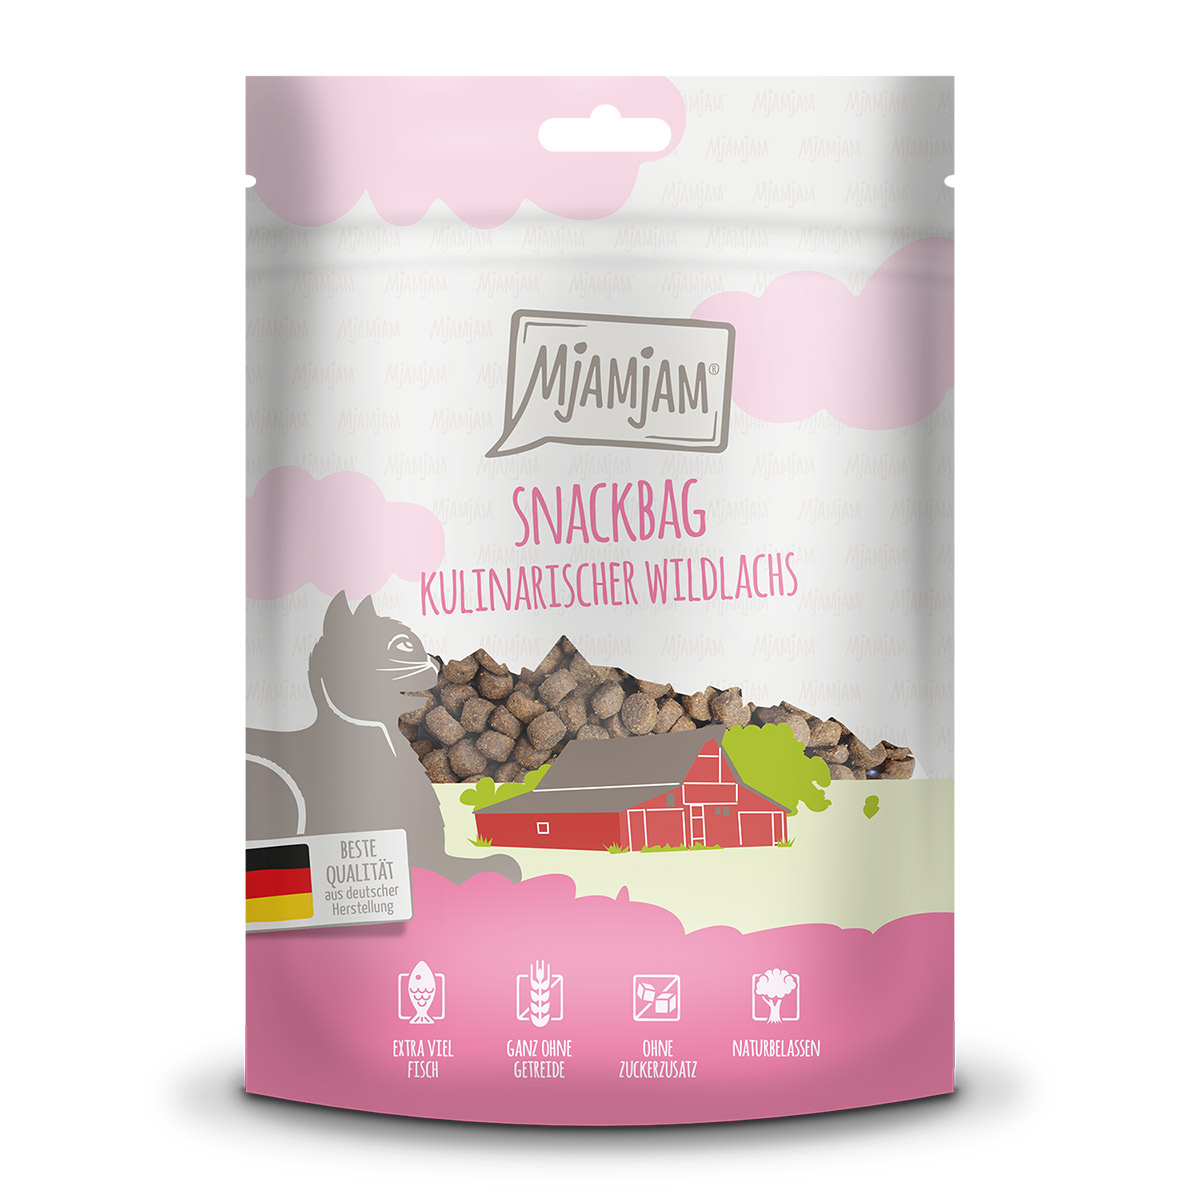 MjAMjAM – Snackbag – kulinarischer Wildlachs 125g